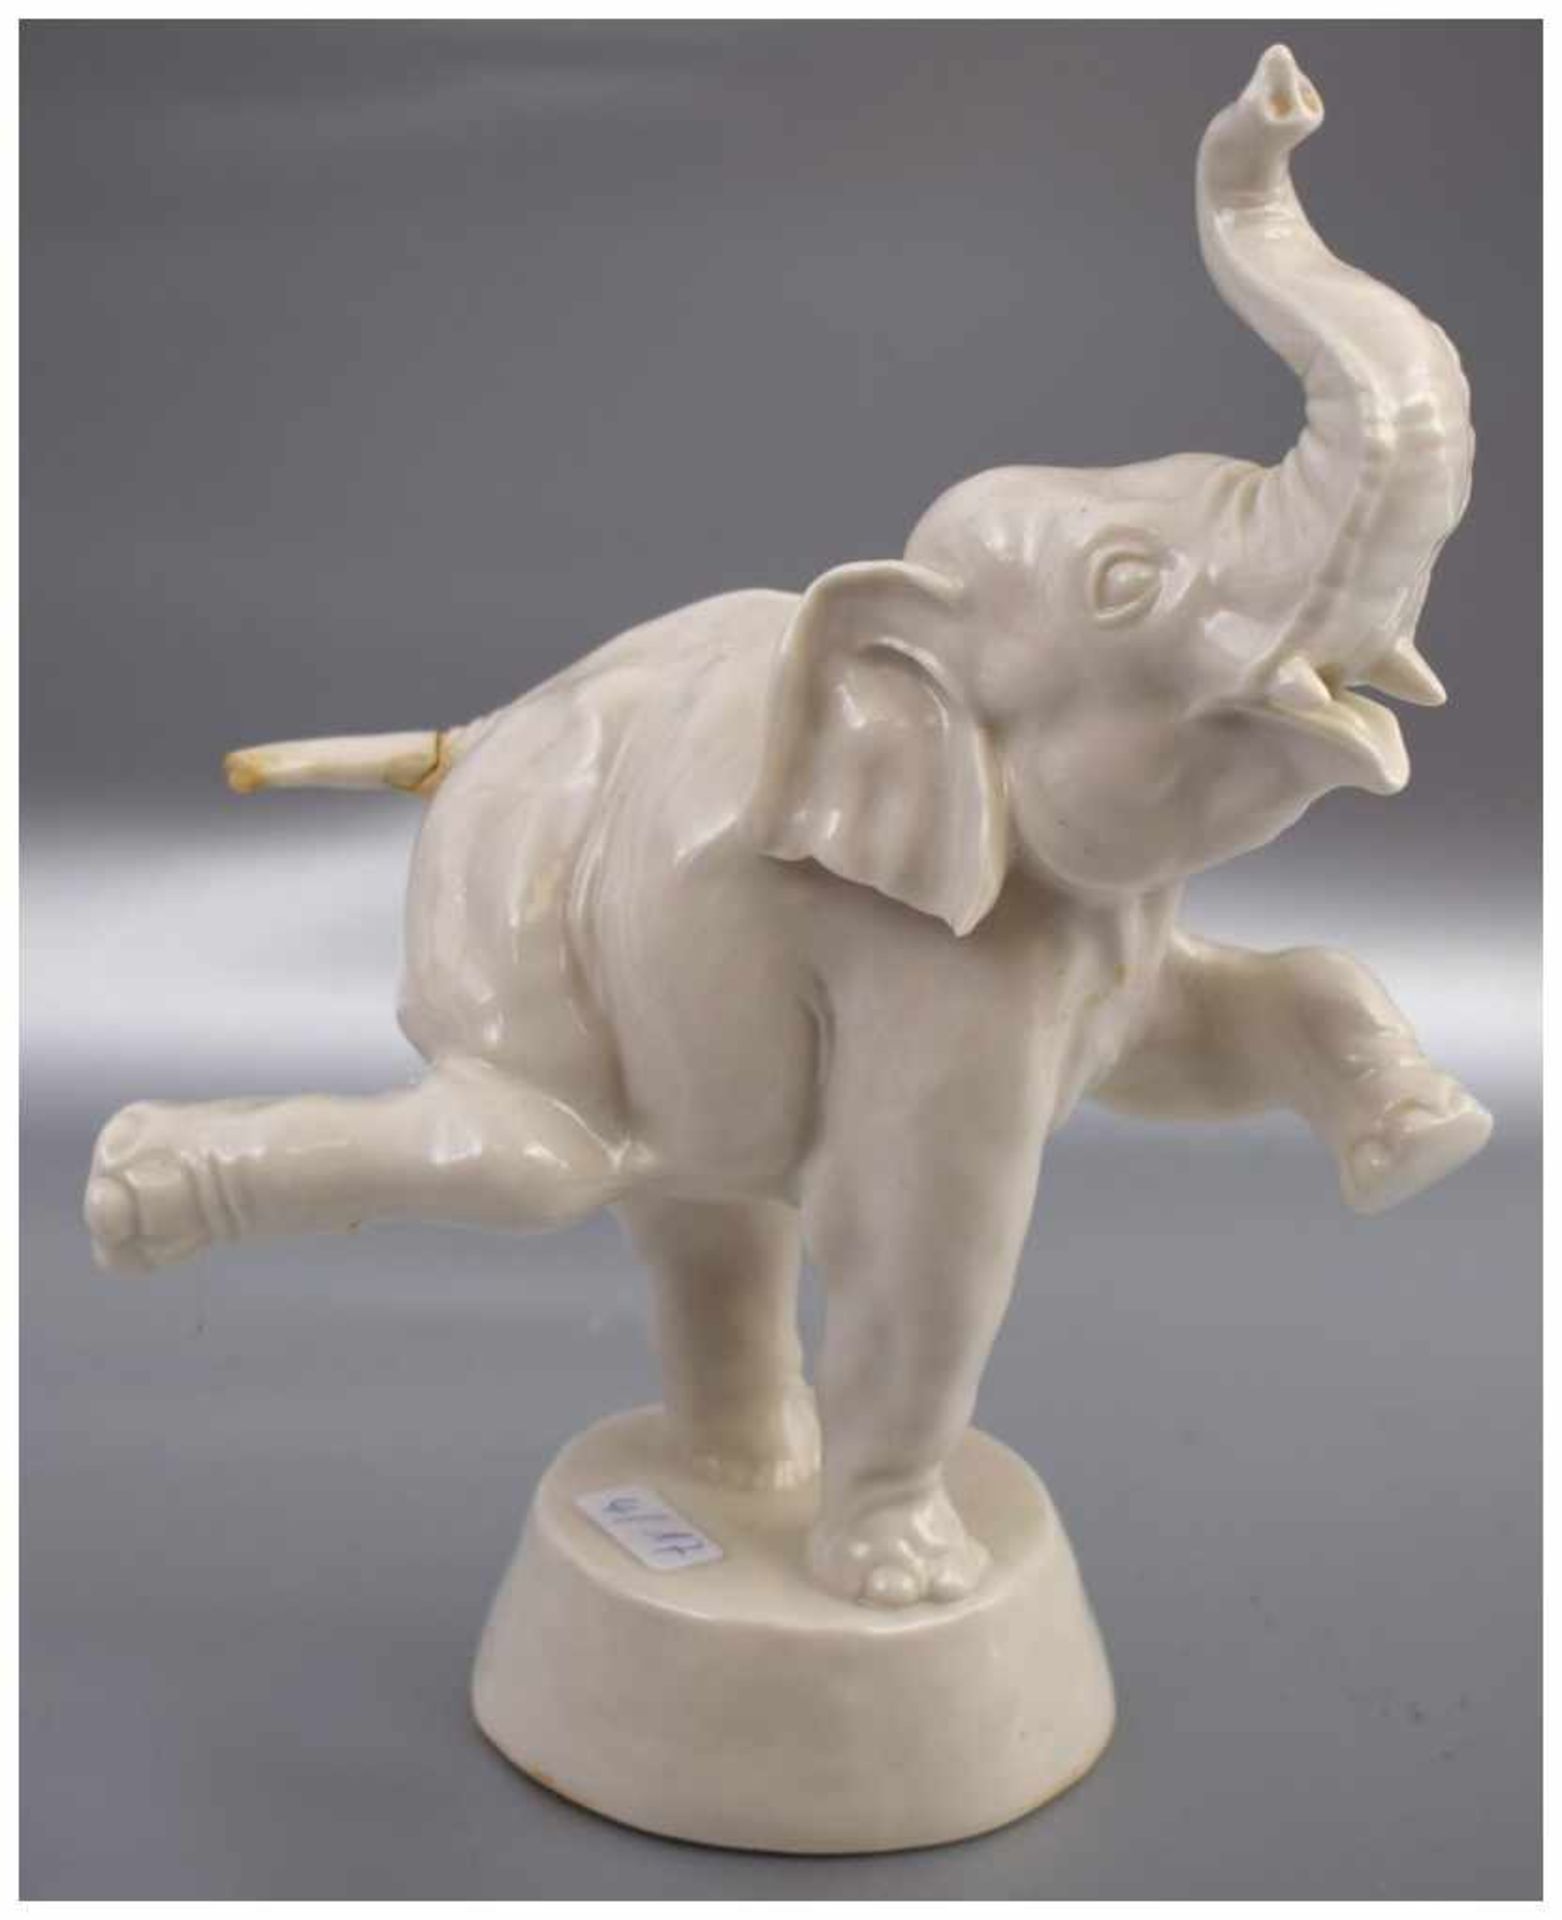 Zirkuselefant weiß glasiert, auf Sockel stehend, besch., H 19 cm, FM Nymphenburg